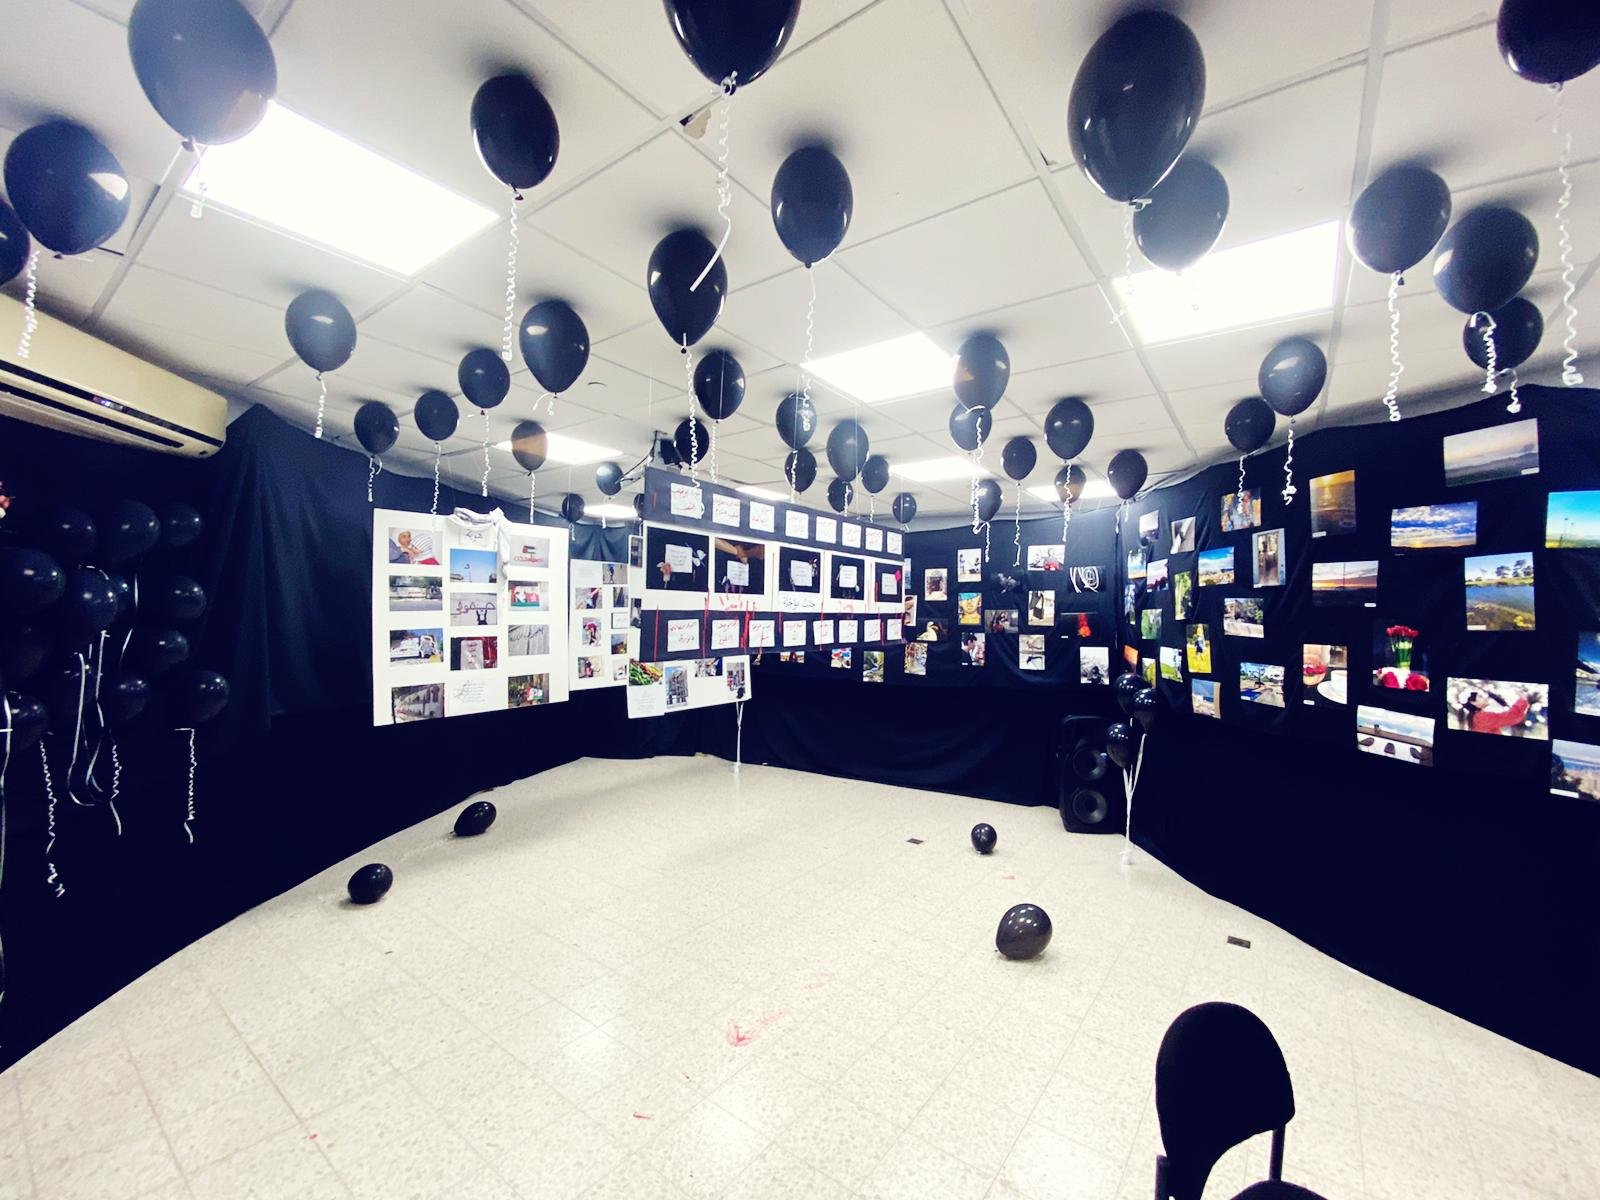 افتتاح معرض صور "حكايات" في المدرسة الشاملة الجديدة في الرينة-4